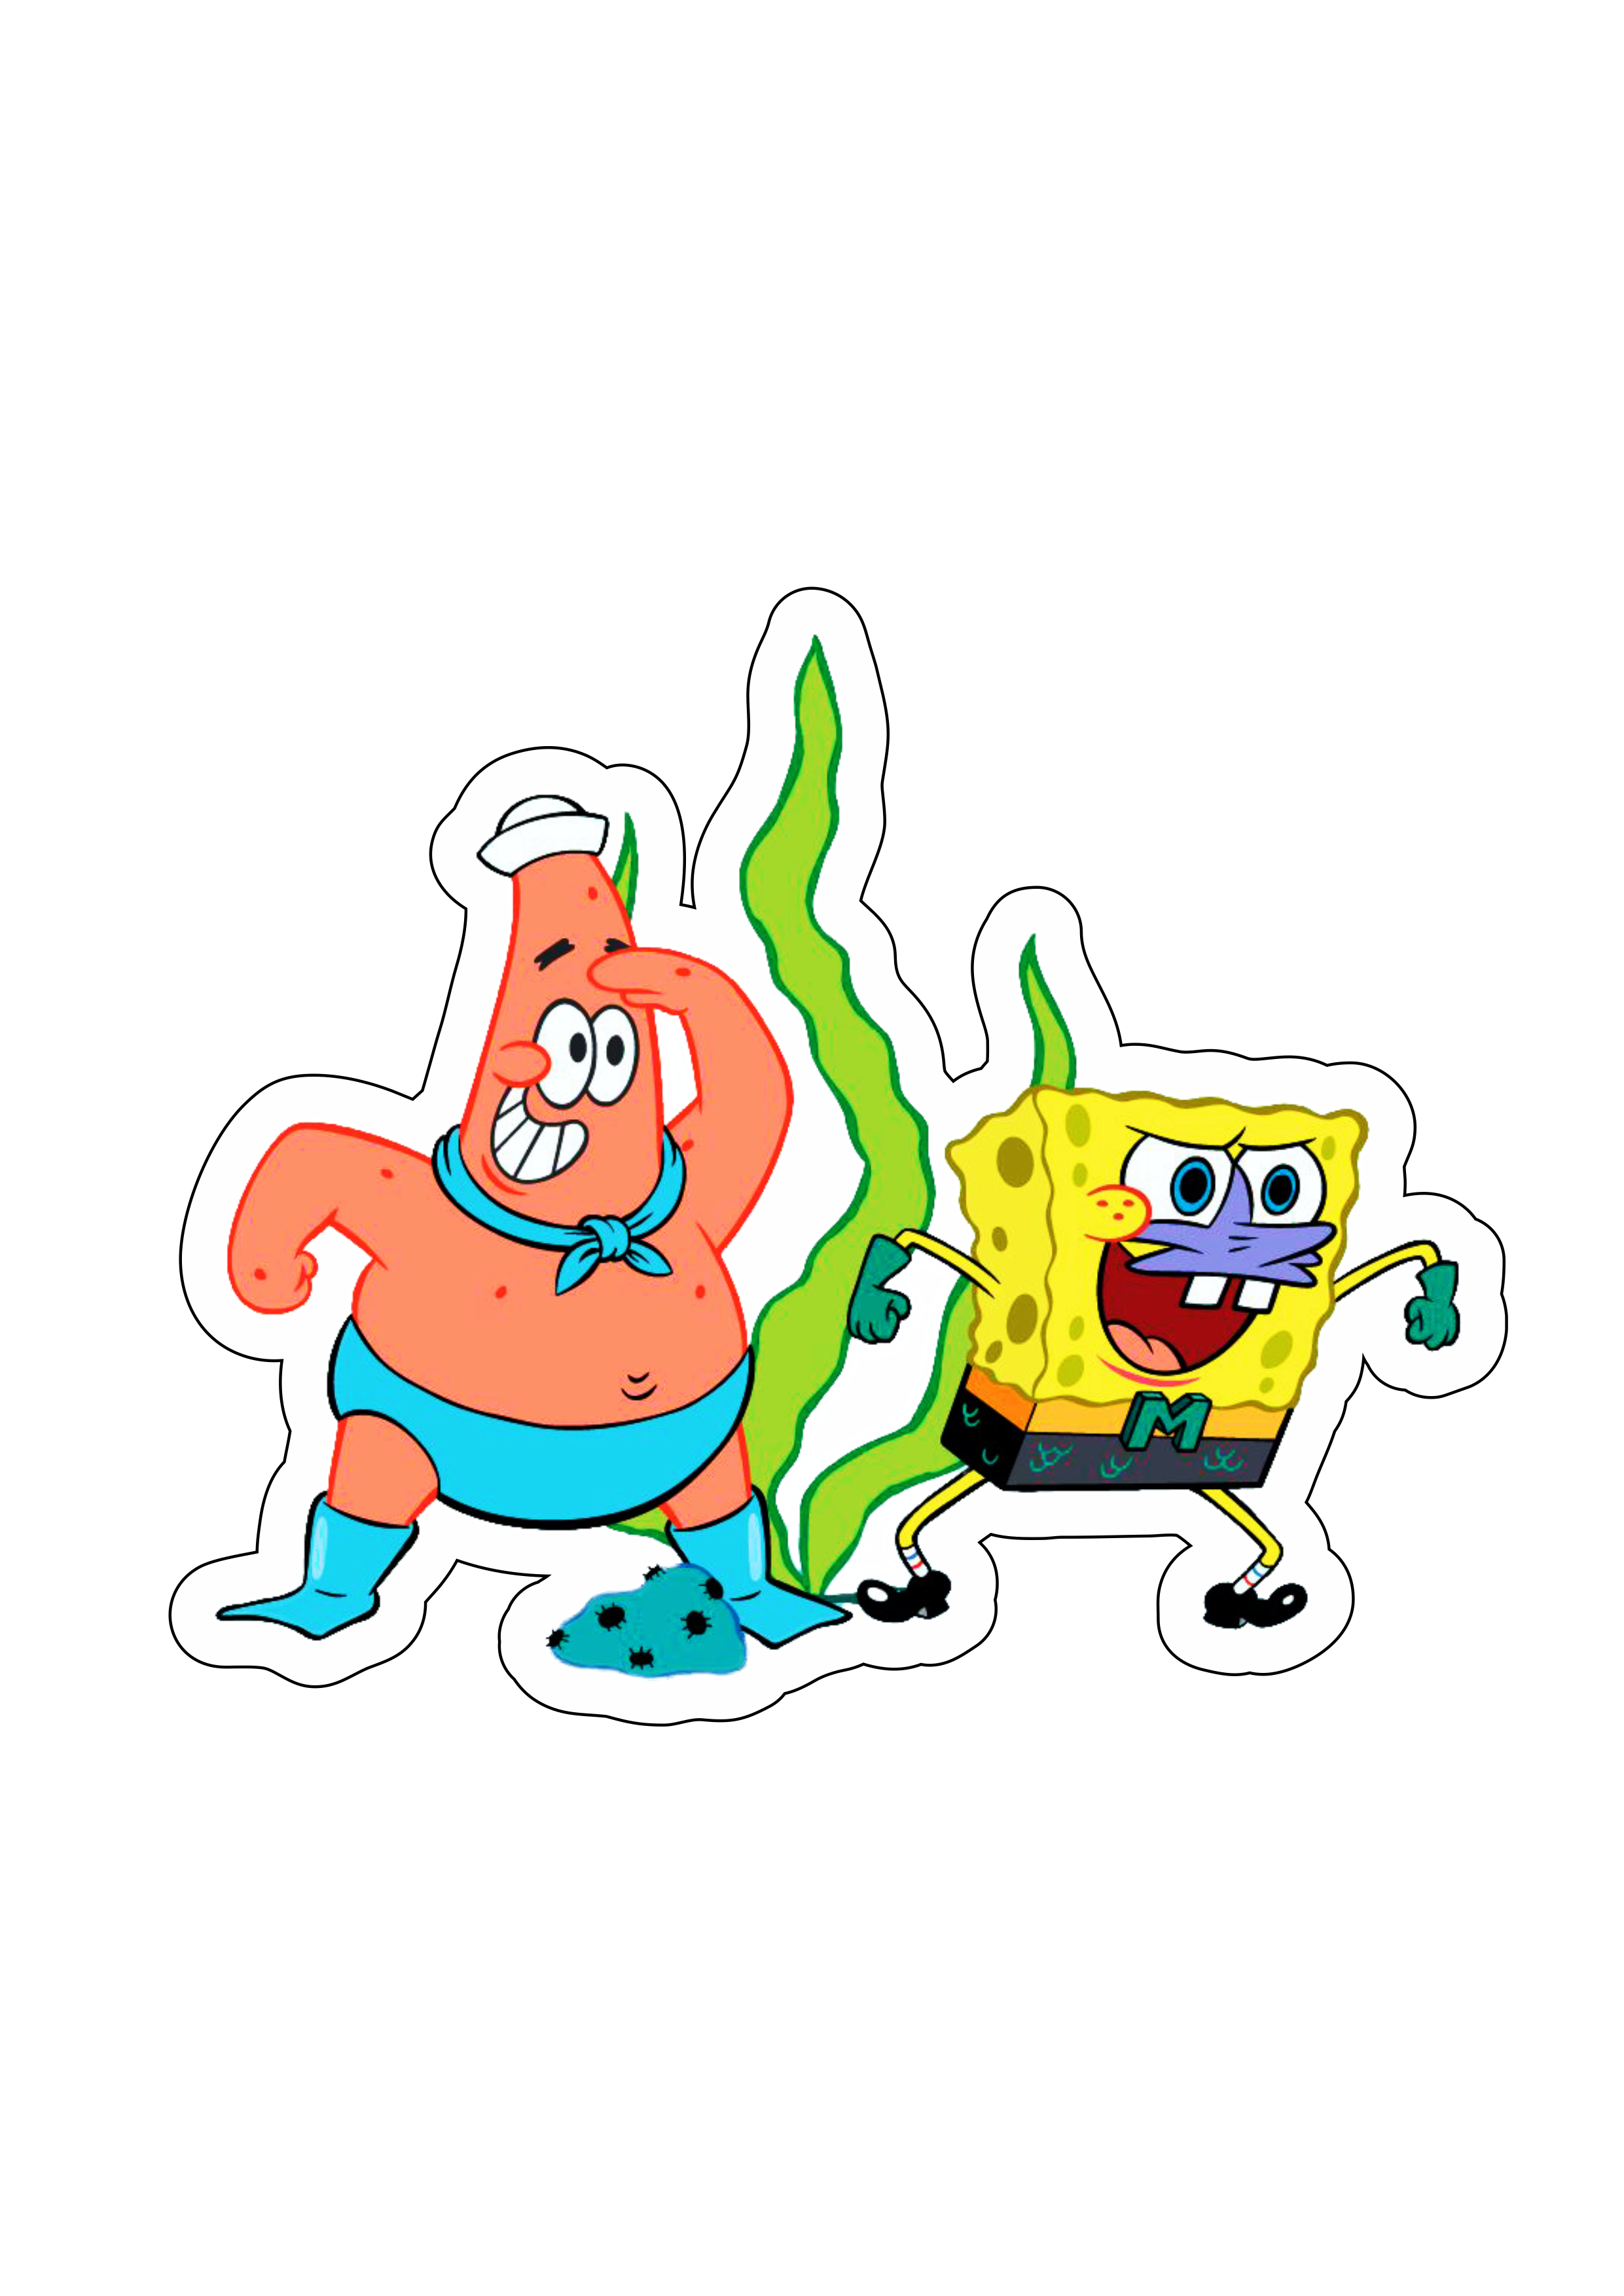 Bob esponja calça quadrada e Patrick estrela herois Spongebob Squarepants desenho animado infantil Nickelodeon png